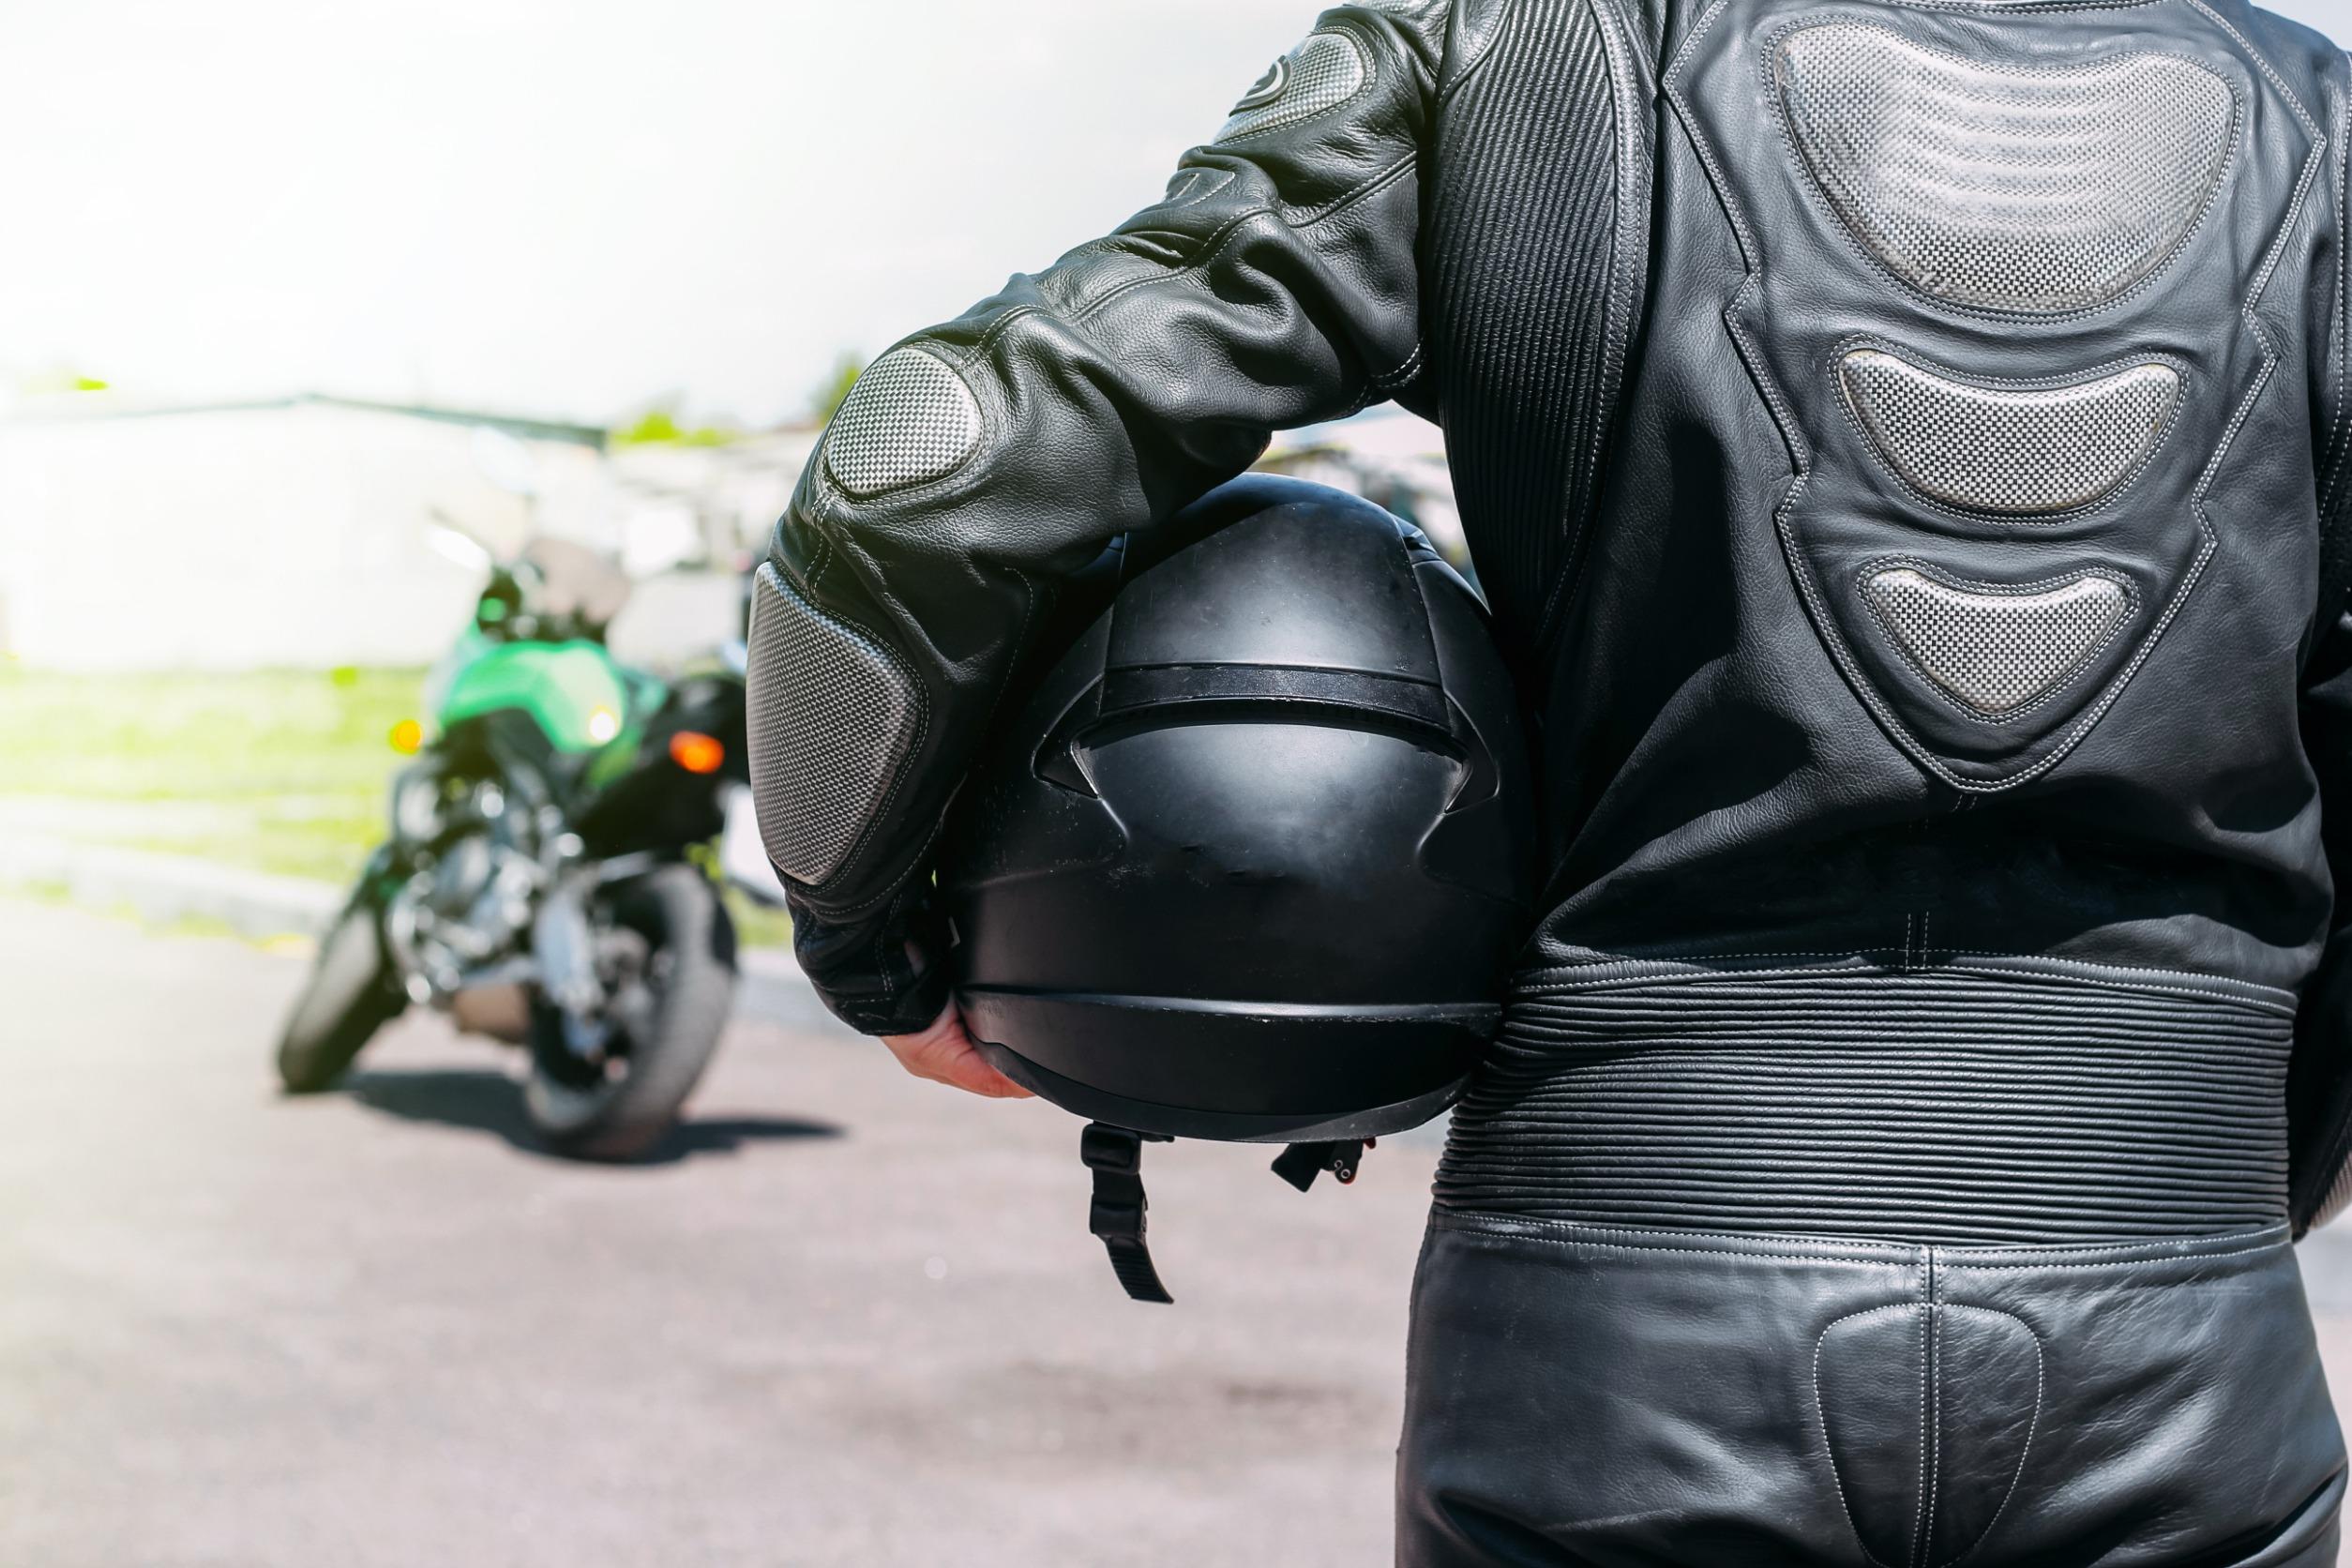 Come scegliere gli accessori moto giusti per la sicurezza e la